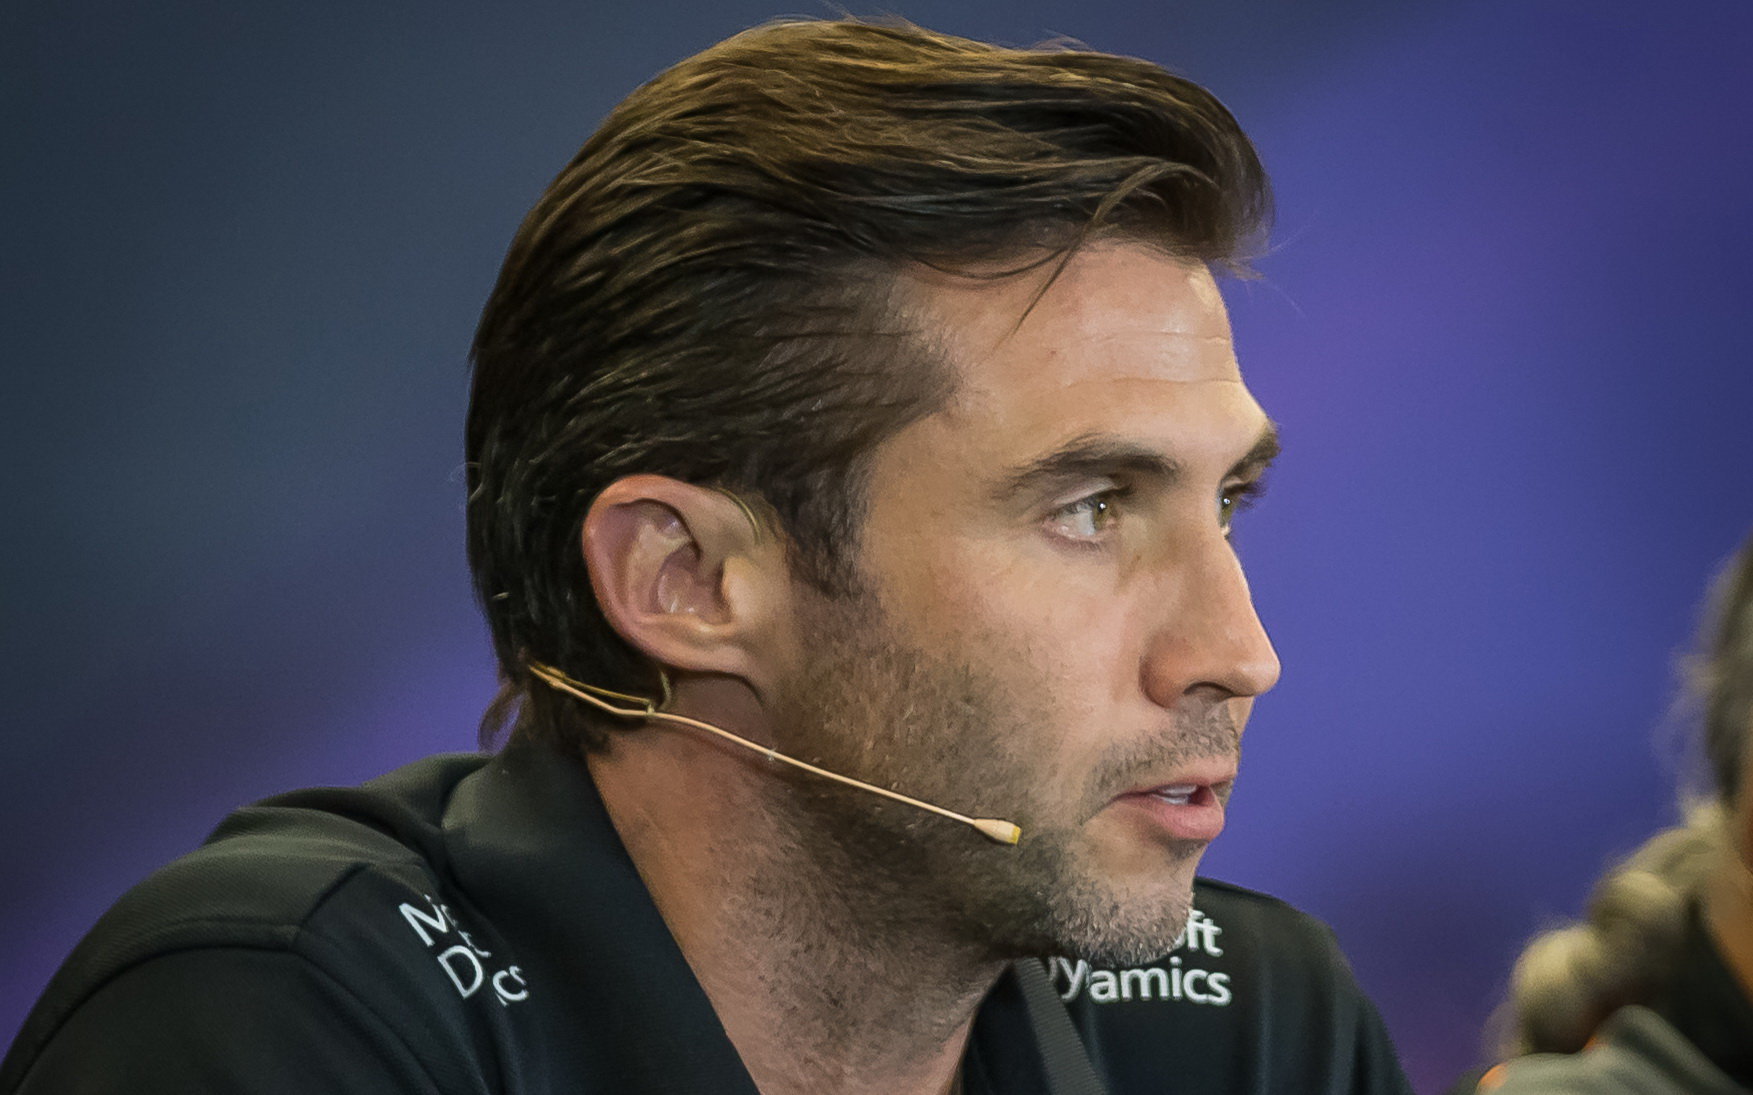 Matthew Carter nadále věří v konečné spojení Lotusu a Renaultu